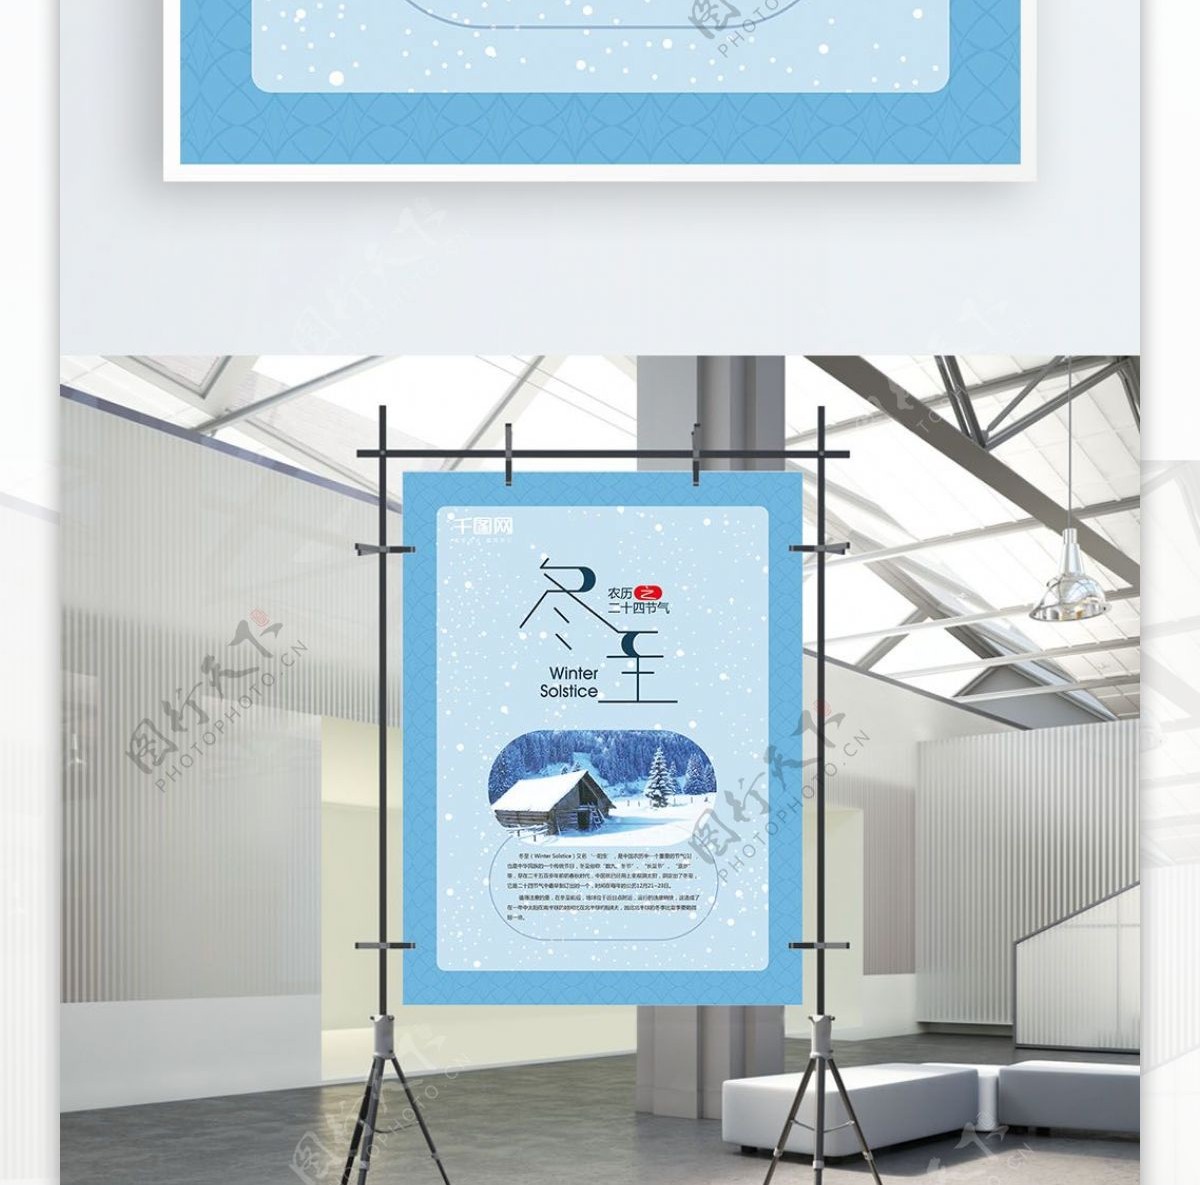 二十四节气之冬至蓝色海报设计AI模板